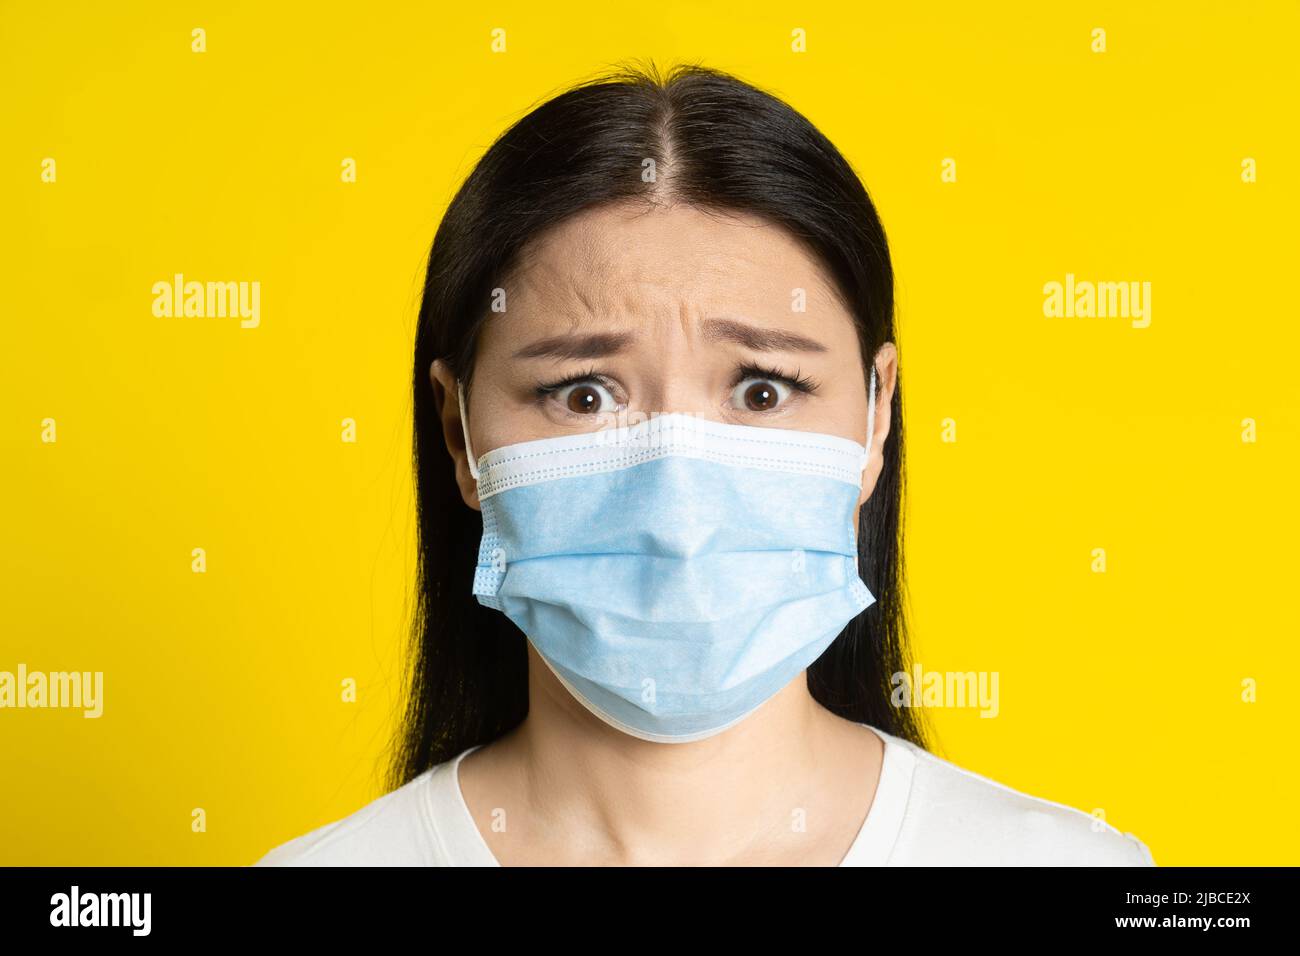 Peur de la pandémie adulte femme asiatique portant un masque médical coronavirus ou prévention de la monkeypox. Charmante femme d'âge moyen en t-shirt blanc et masque médical sur fond jaune. Banque D'Images